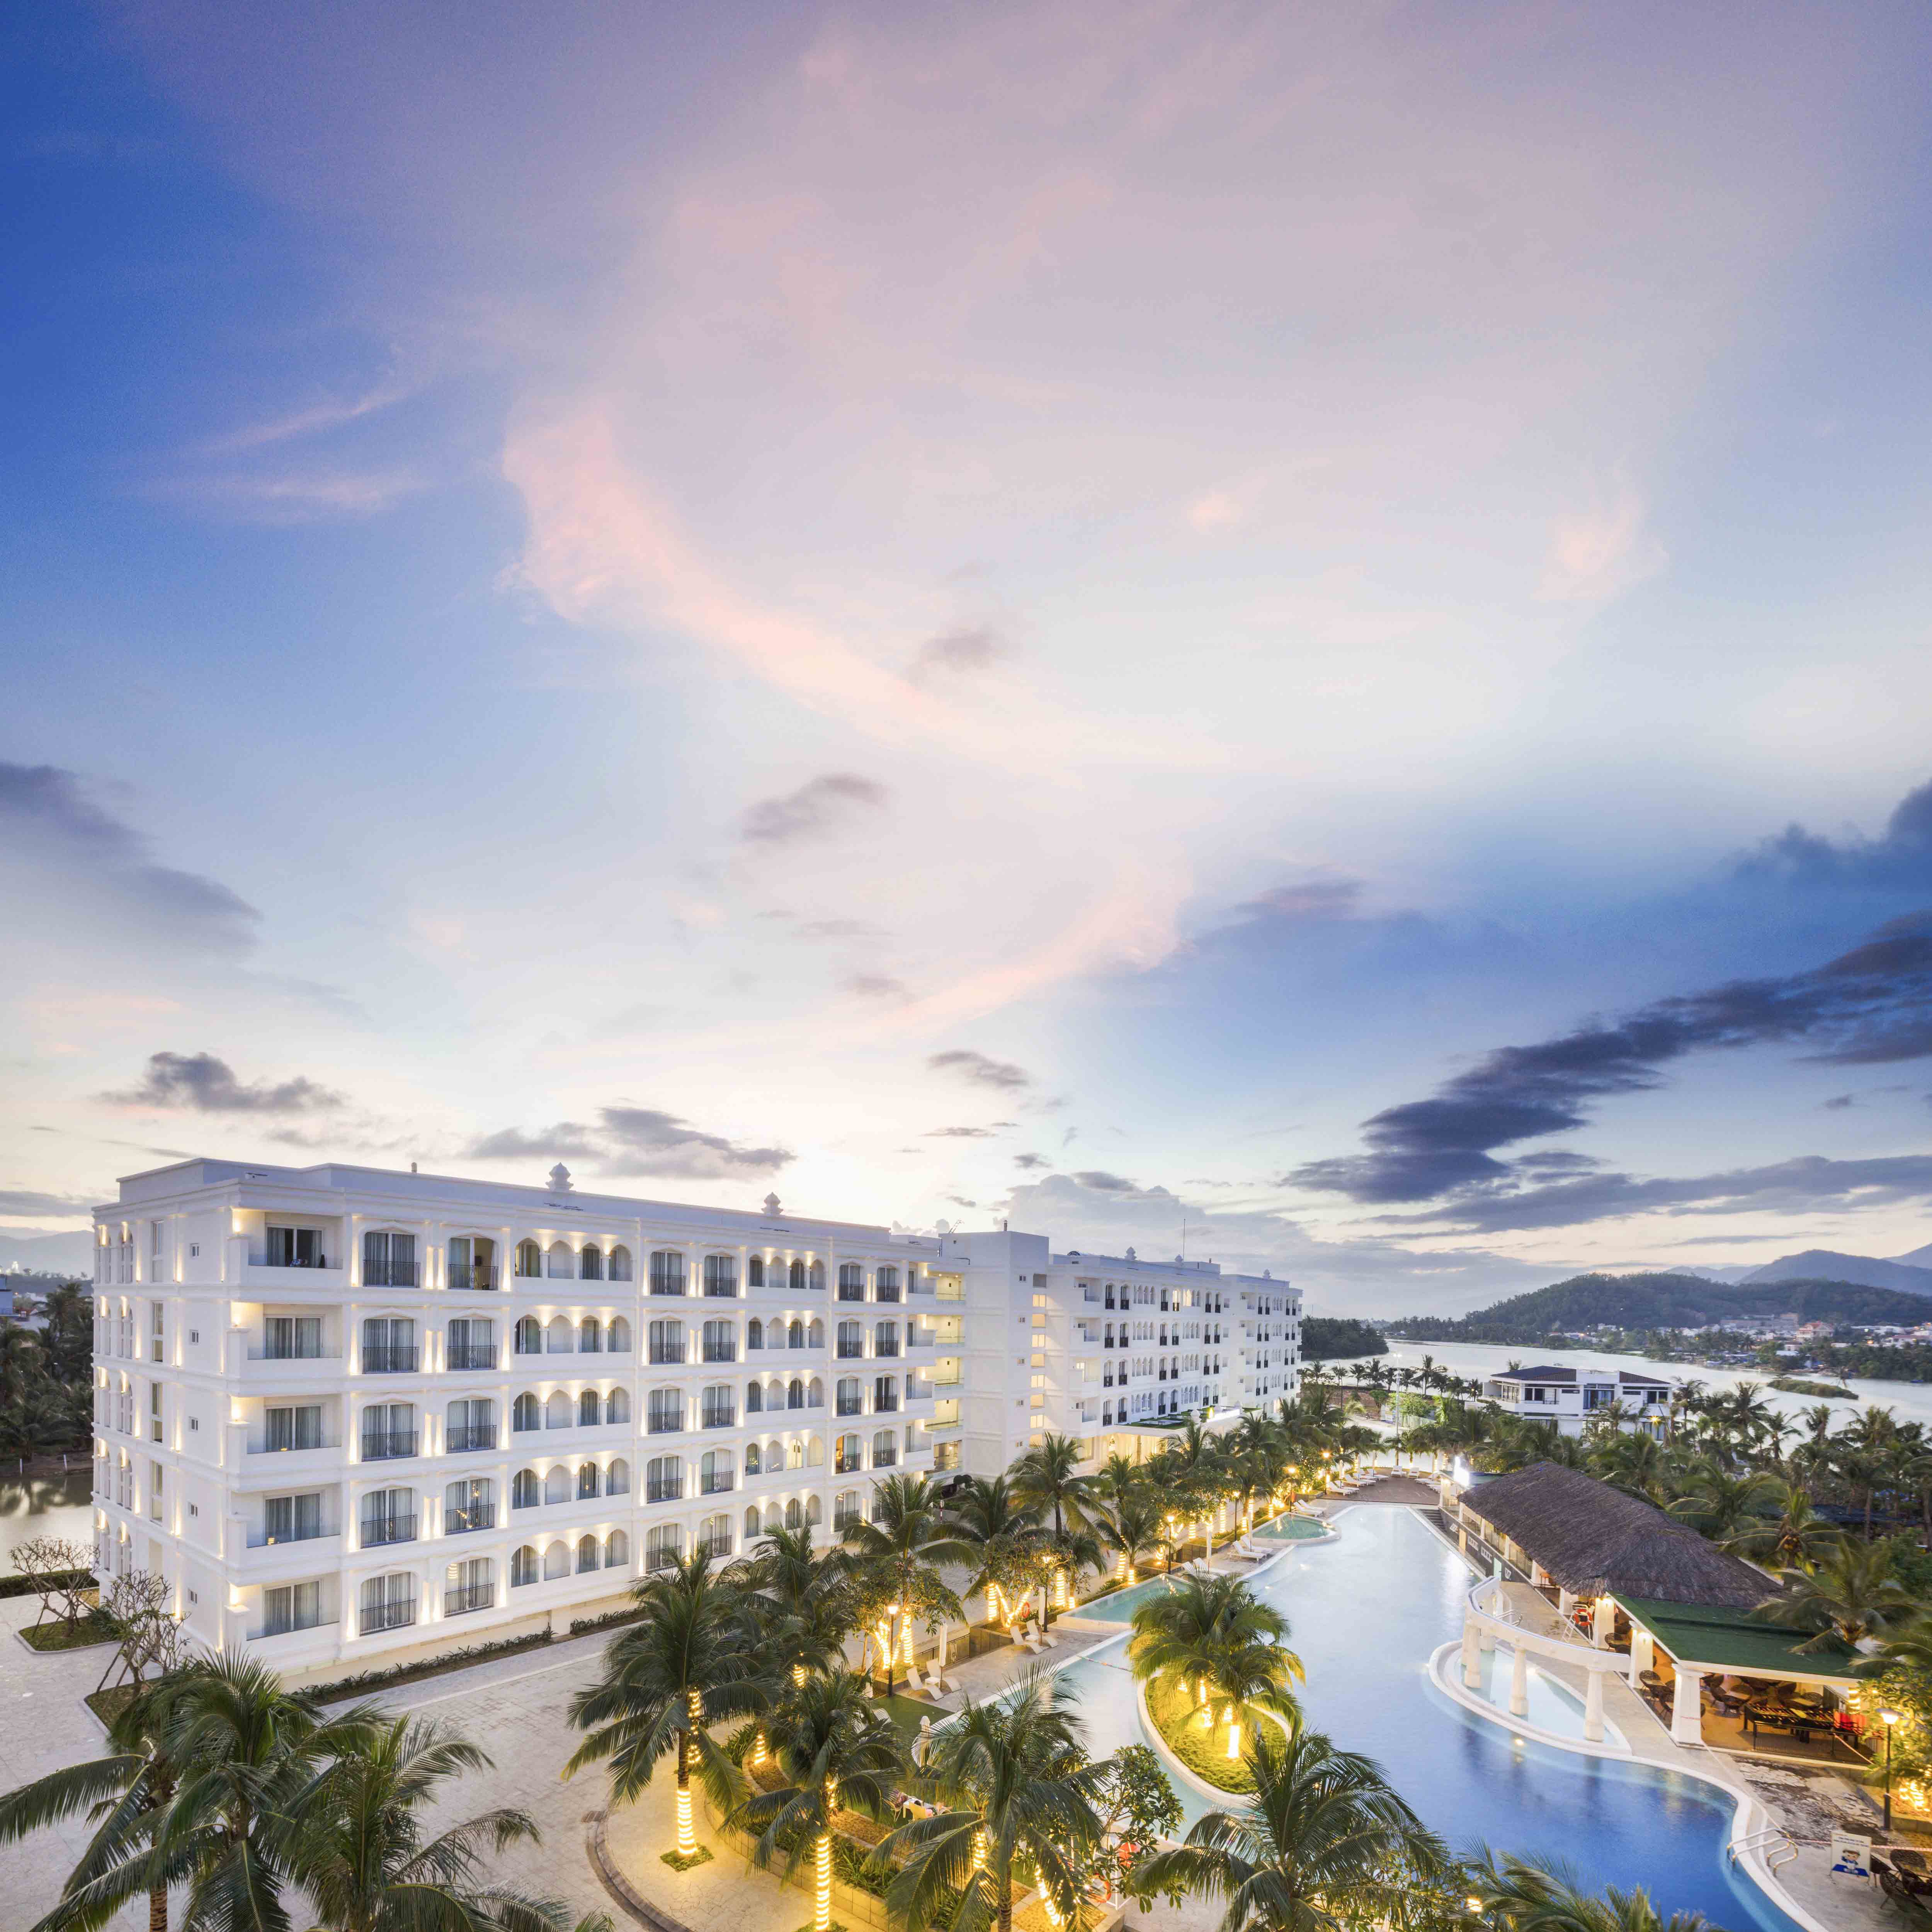 Rooms at Champa Island Nha Trang Resort